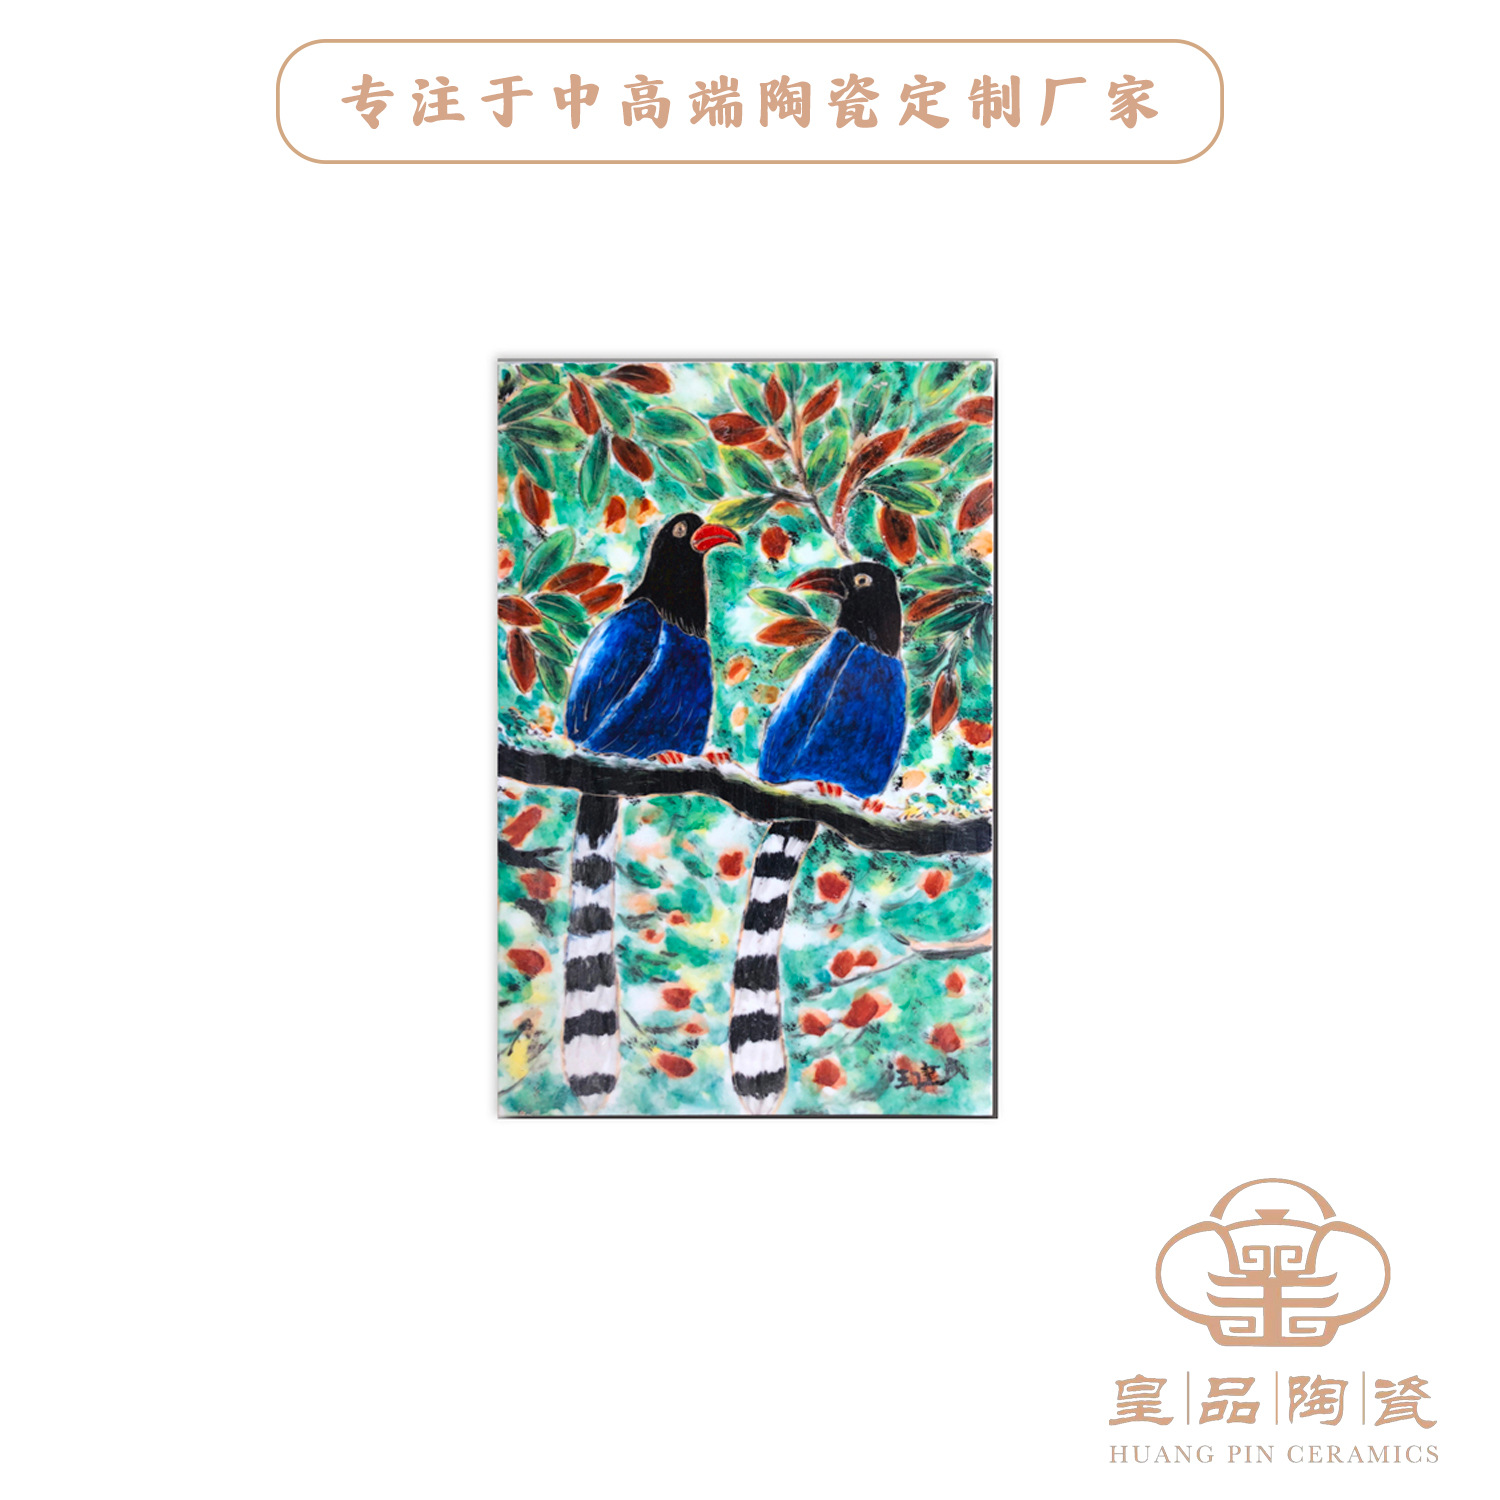 景德镇陶瓷壁画厂家 家居陶瓷装饰 陶瓷摆件唐三彩瓷板画礼品定制